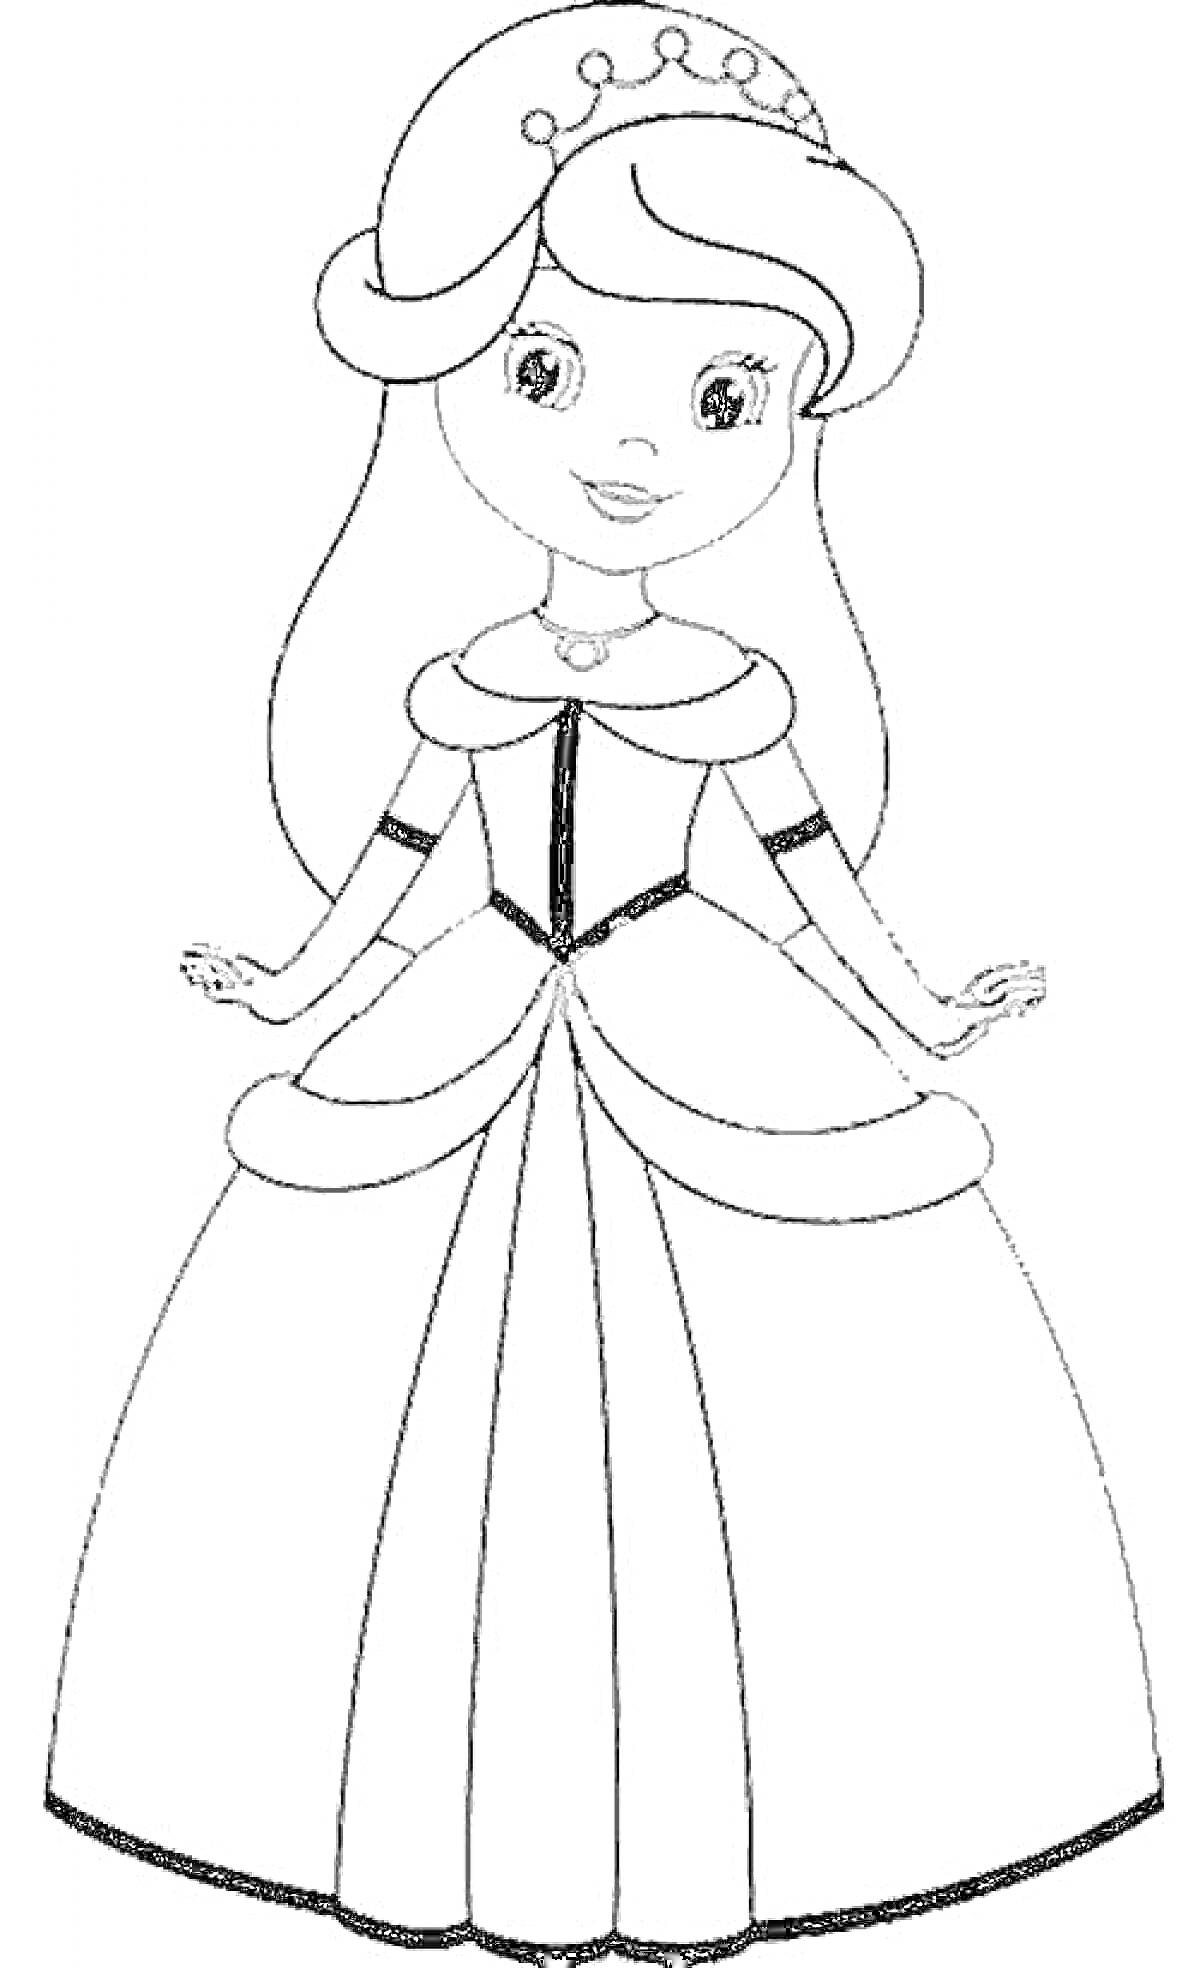 Раскраска Принцесса в длинном платье с короной на голове